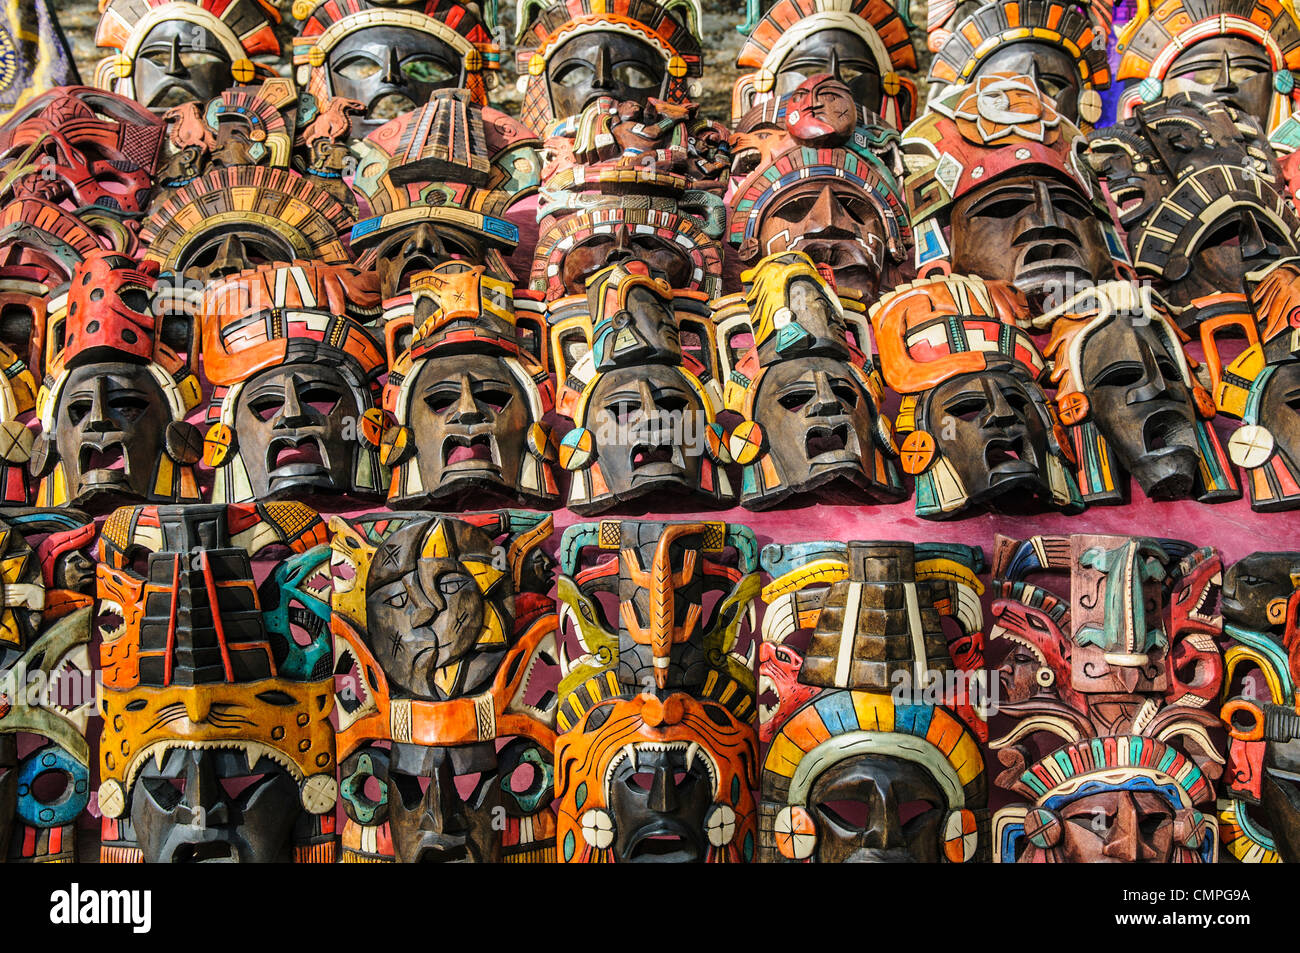 CHICHEN ITZA, au Mexique, les étals de marché - des masques en bois et d'autres souvenirs locaux et de l'artisanat aux touristes visitant les ruines mayas de Chichen Itza site archéologique au Mexique. Banque D'Images